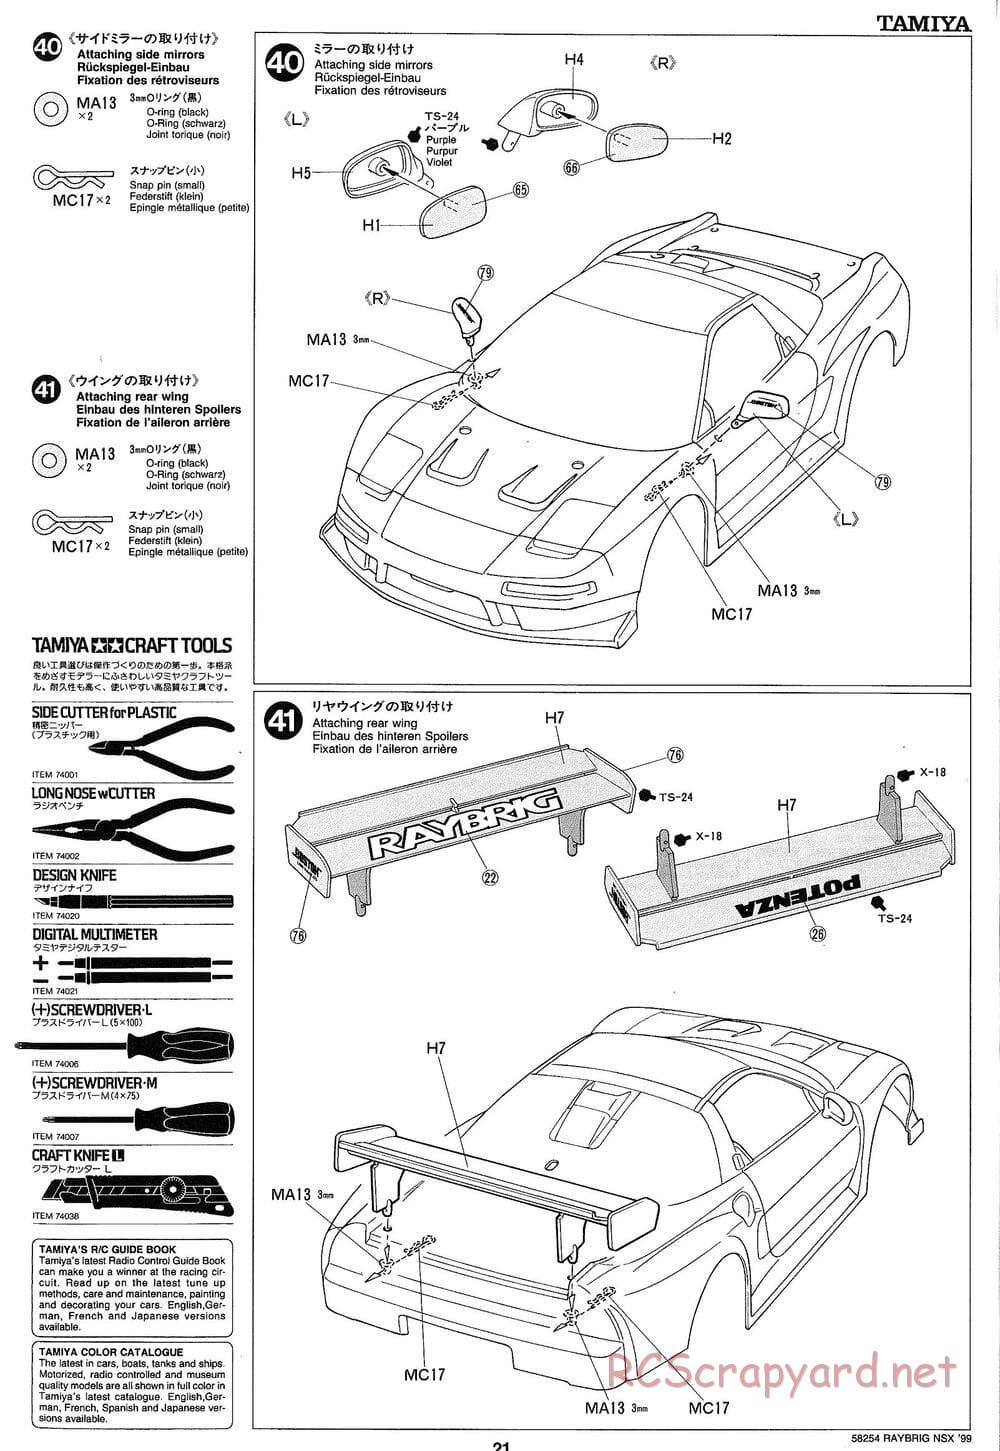 Tamiya - Raybrig NSX 99 - TA-03R Chassis - Manual - Page 21